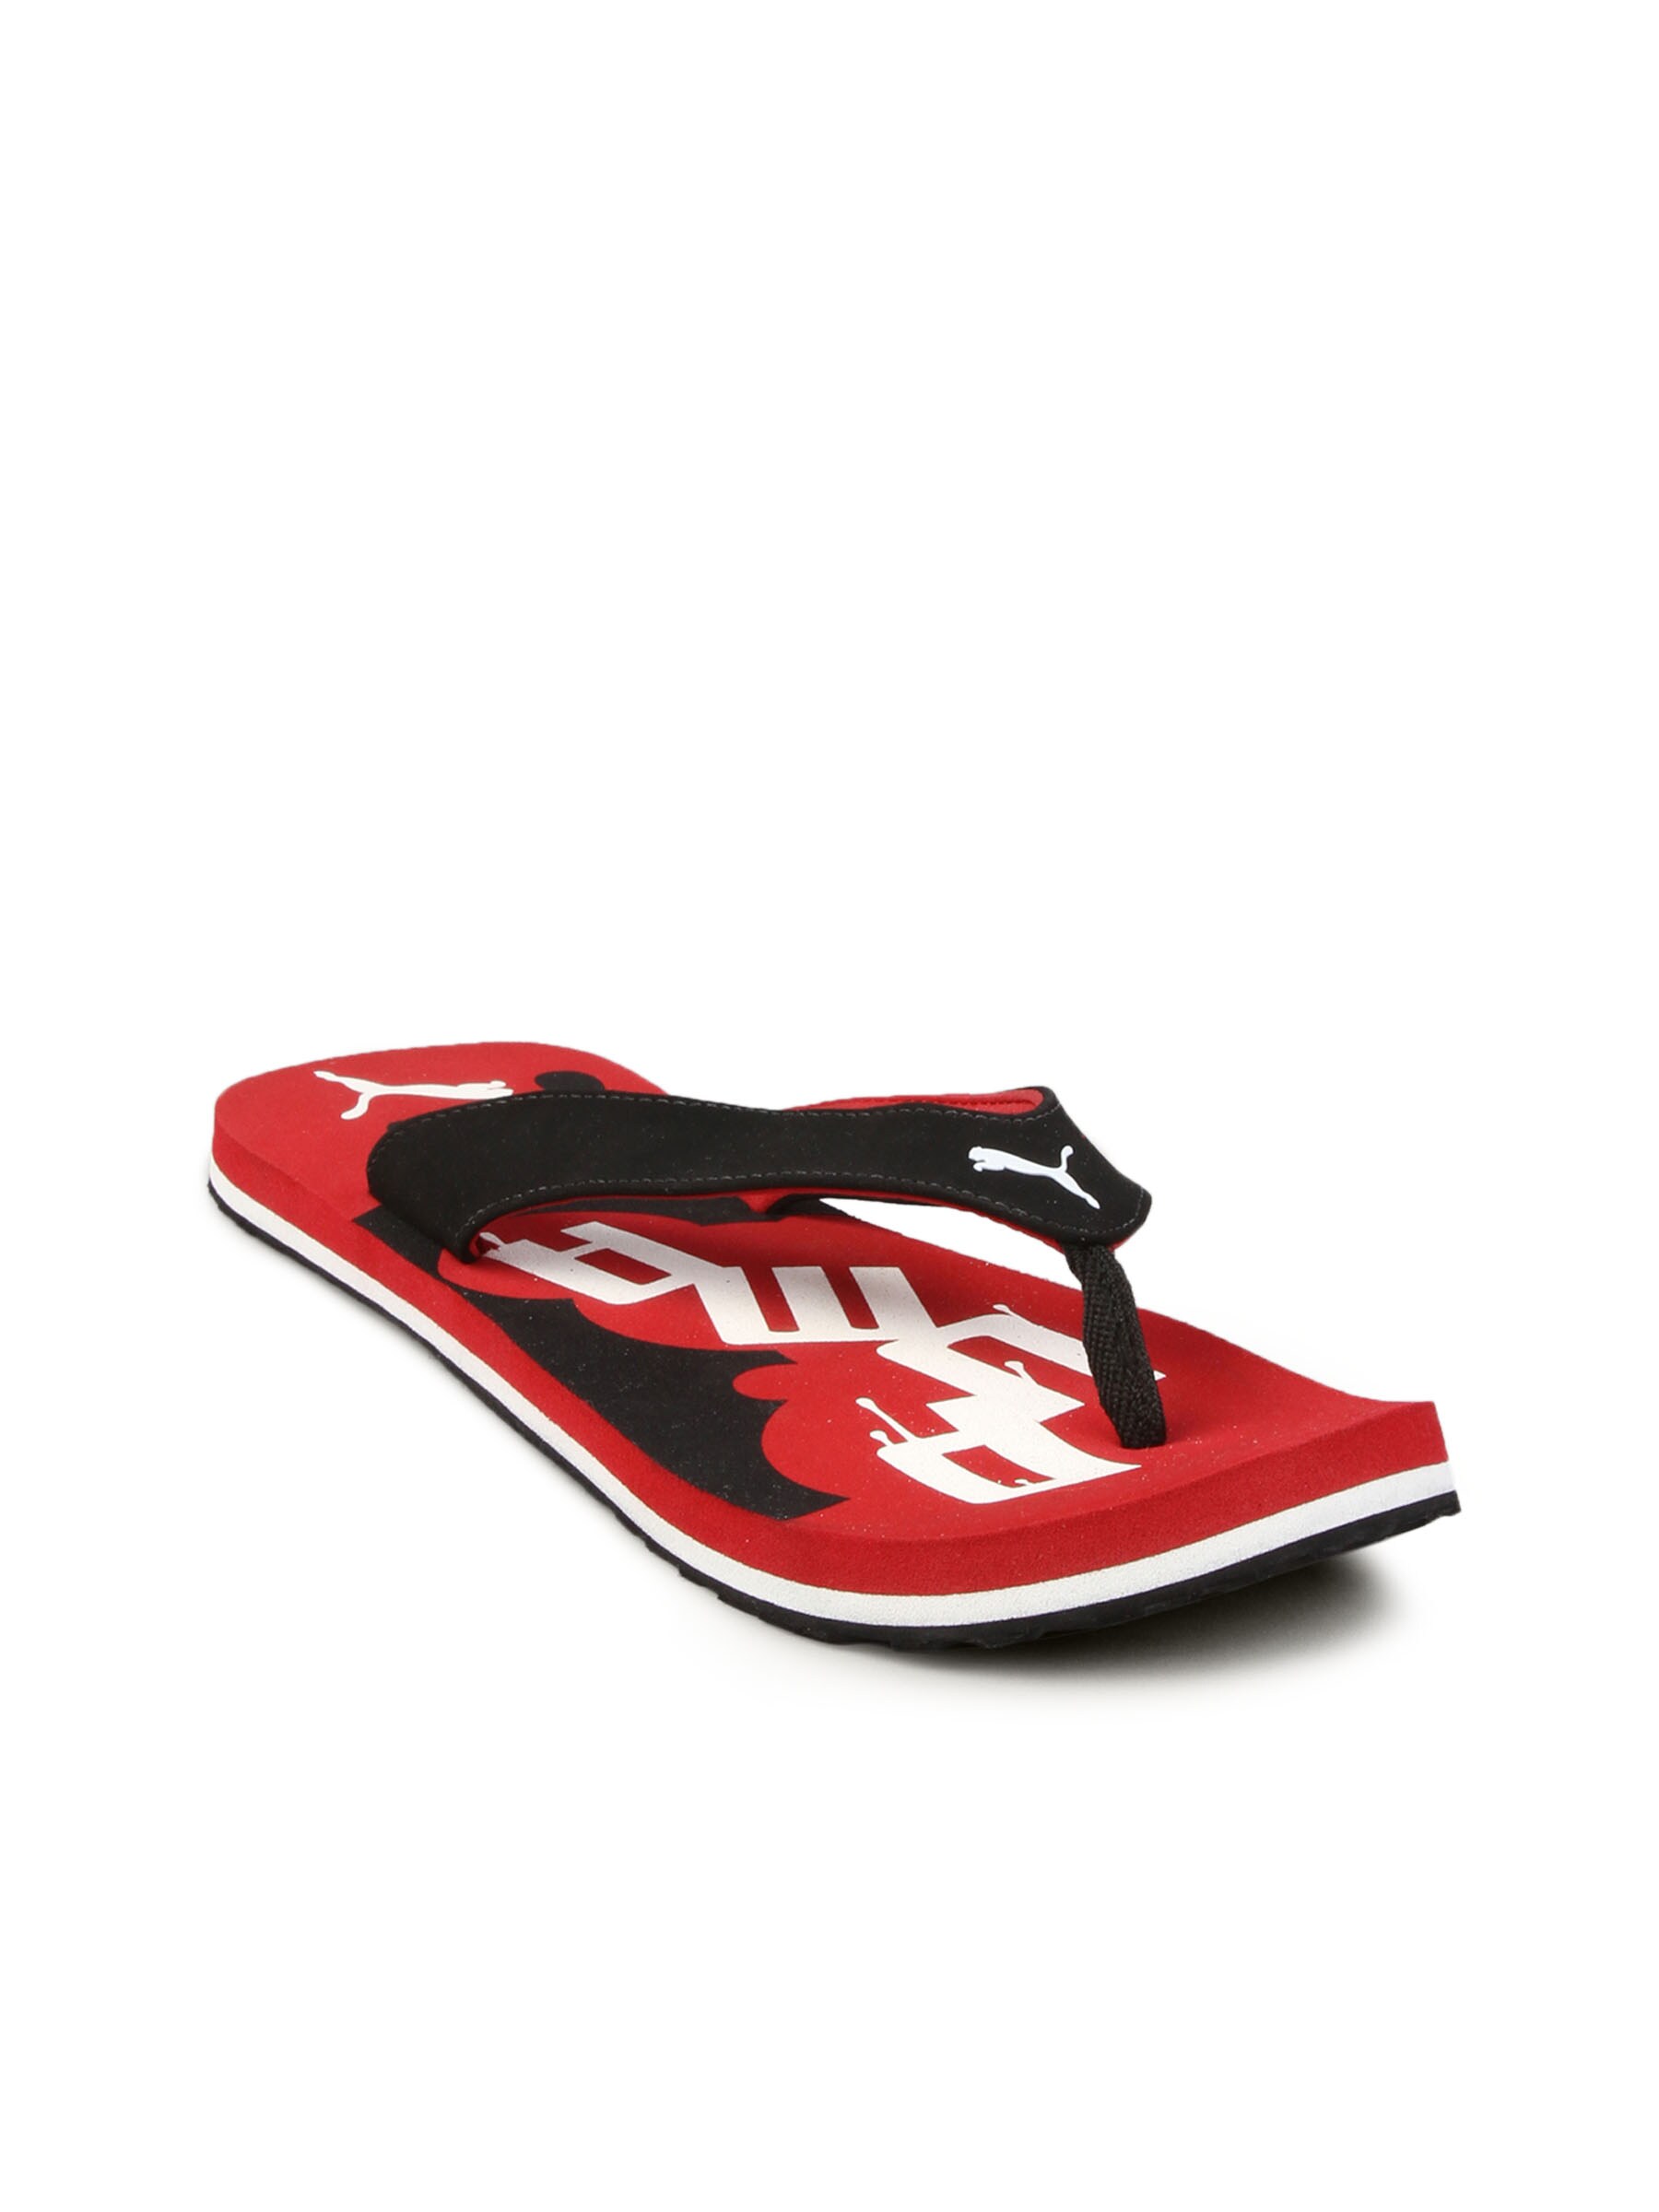 Puma Unisex Splash Red Black Flip Flop